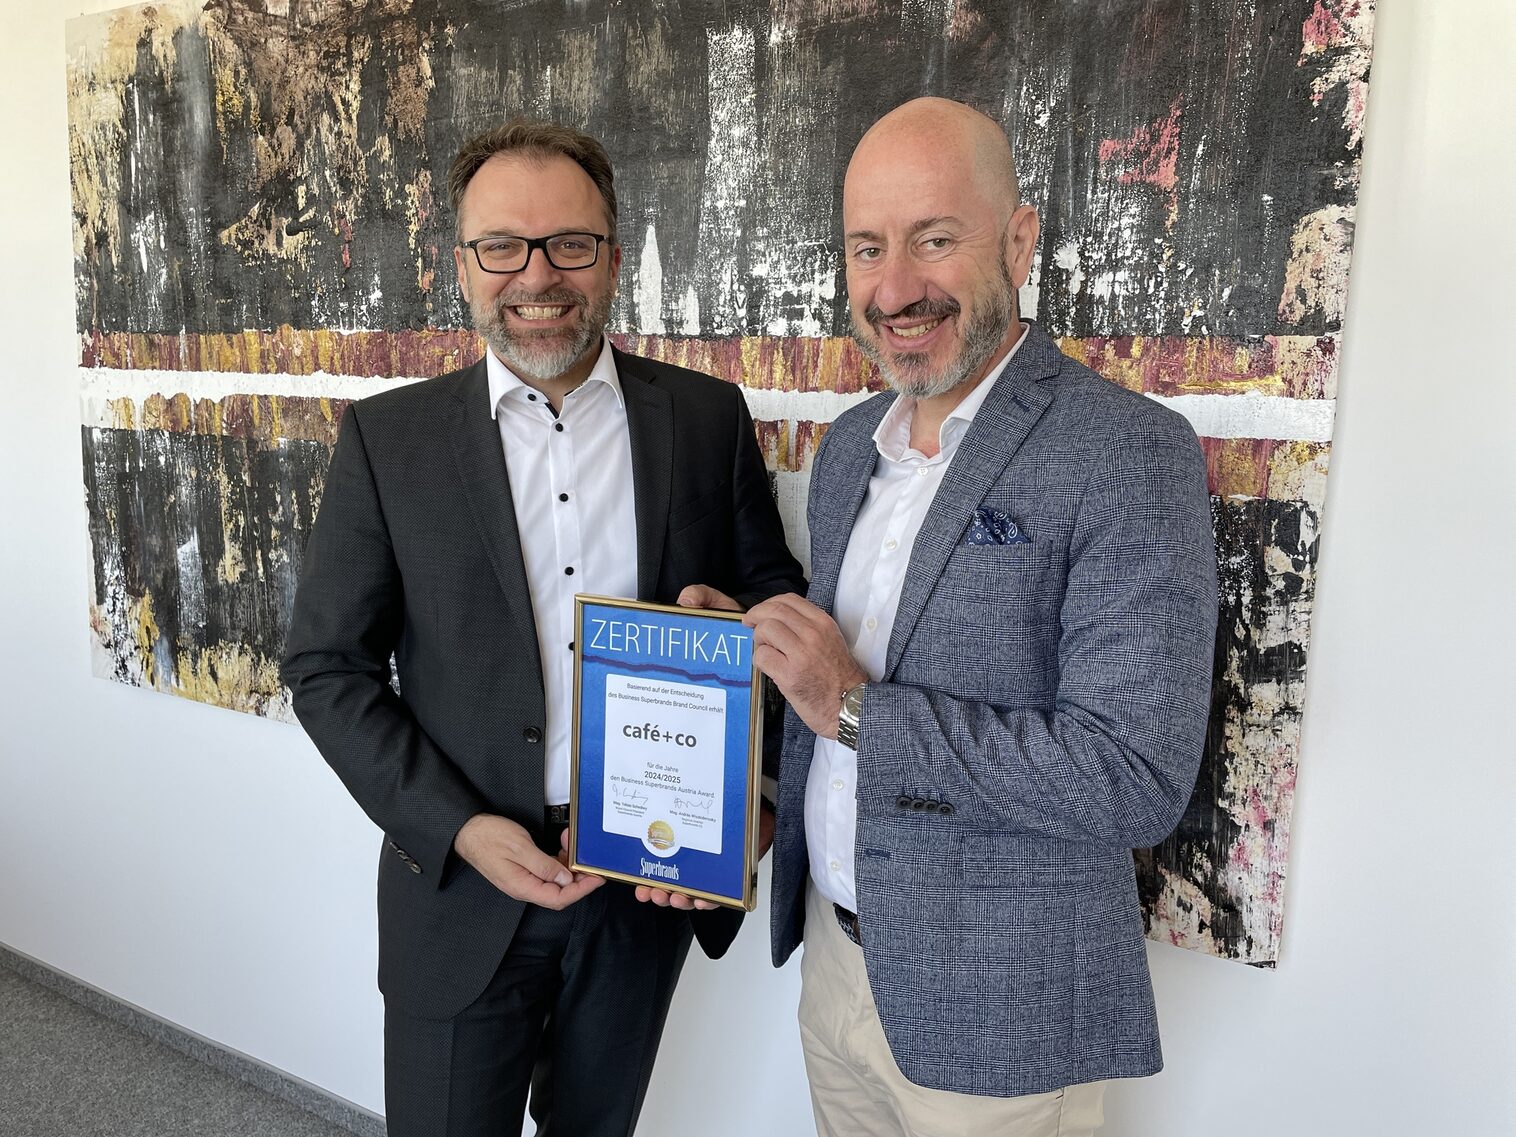 Fritz Kaltenegger und András Wiszkidenszky, Managing Director Superbrands CE bei der Zertifikatsüberreichung